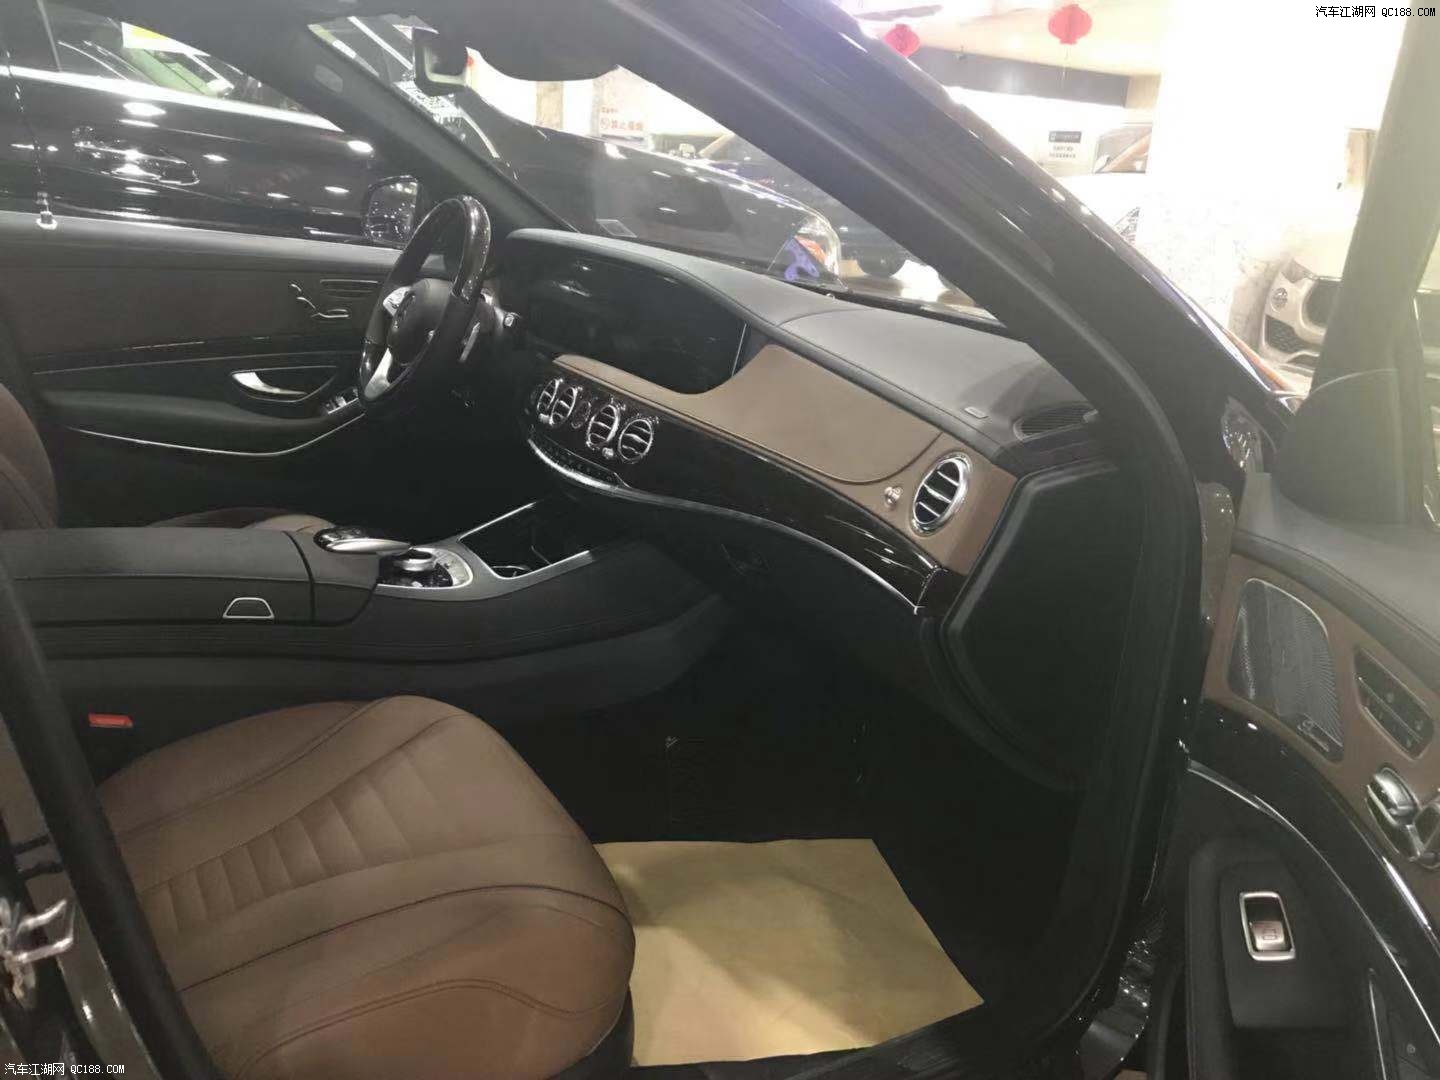 2018款奔驰迈巴赫S560基本延续了老款车型的设计风格